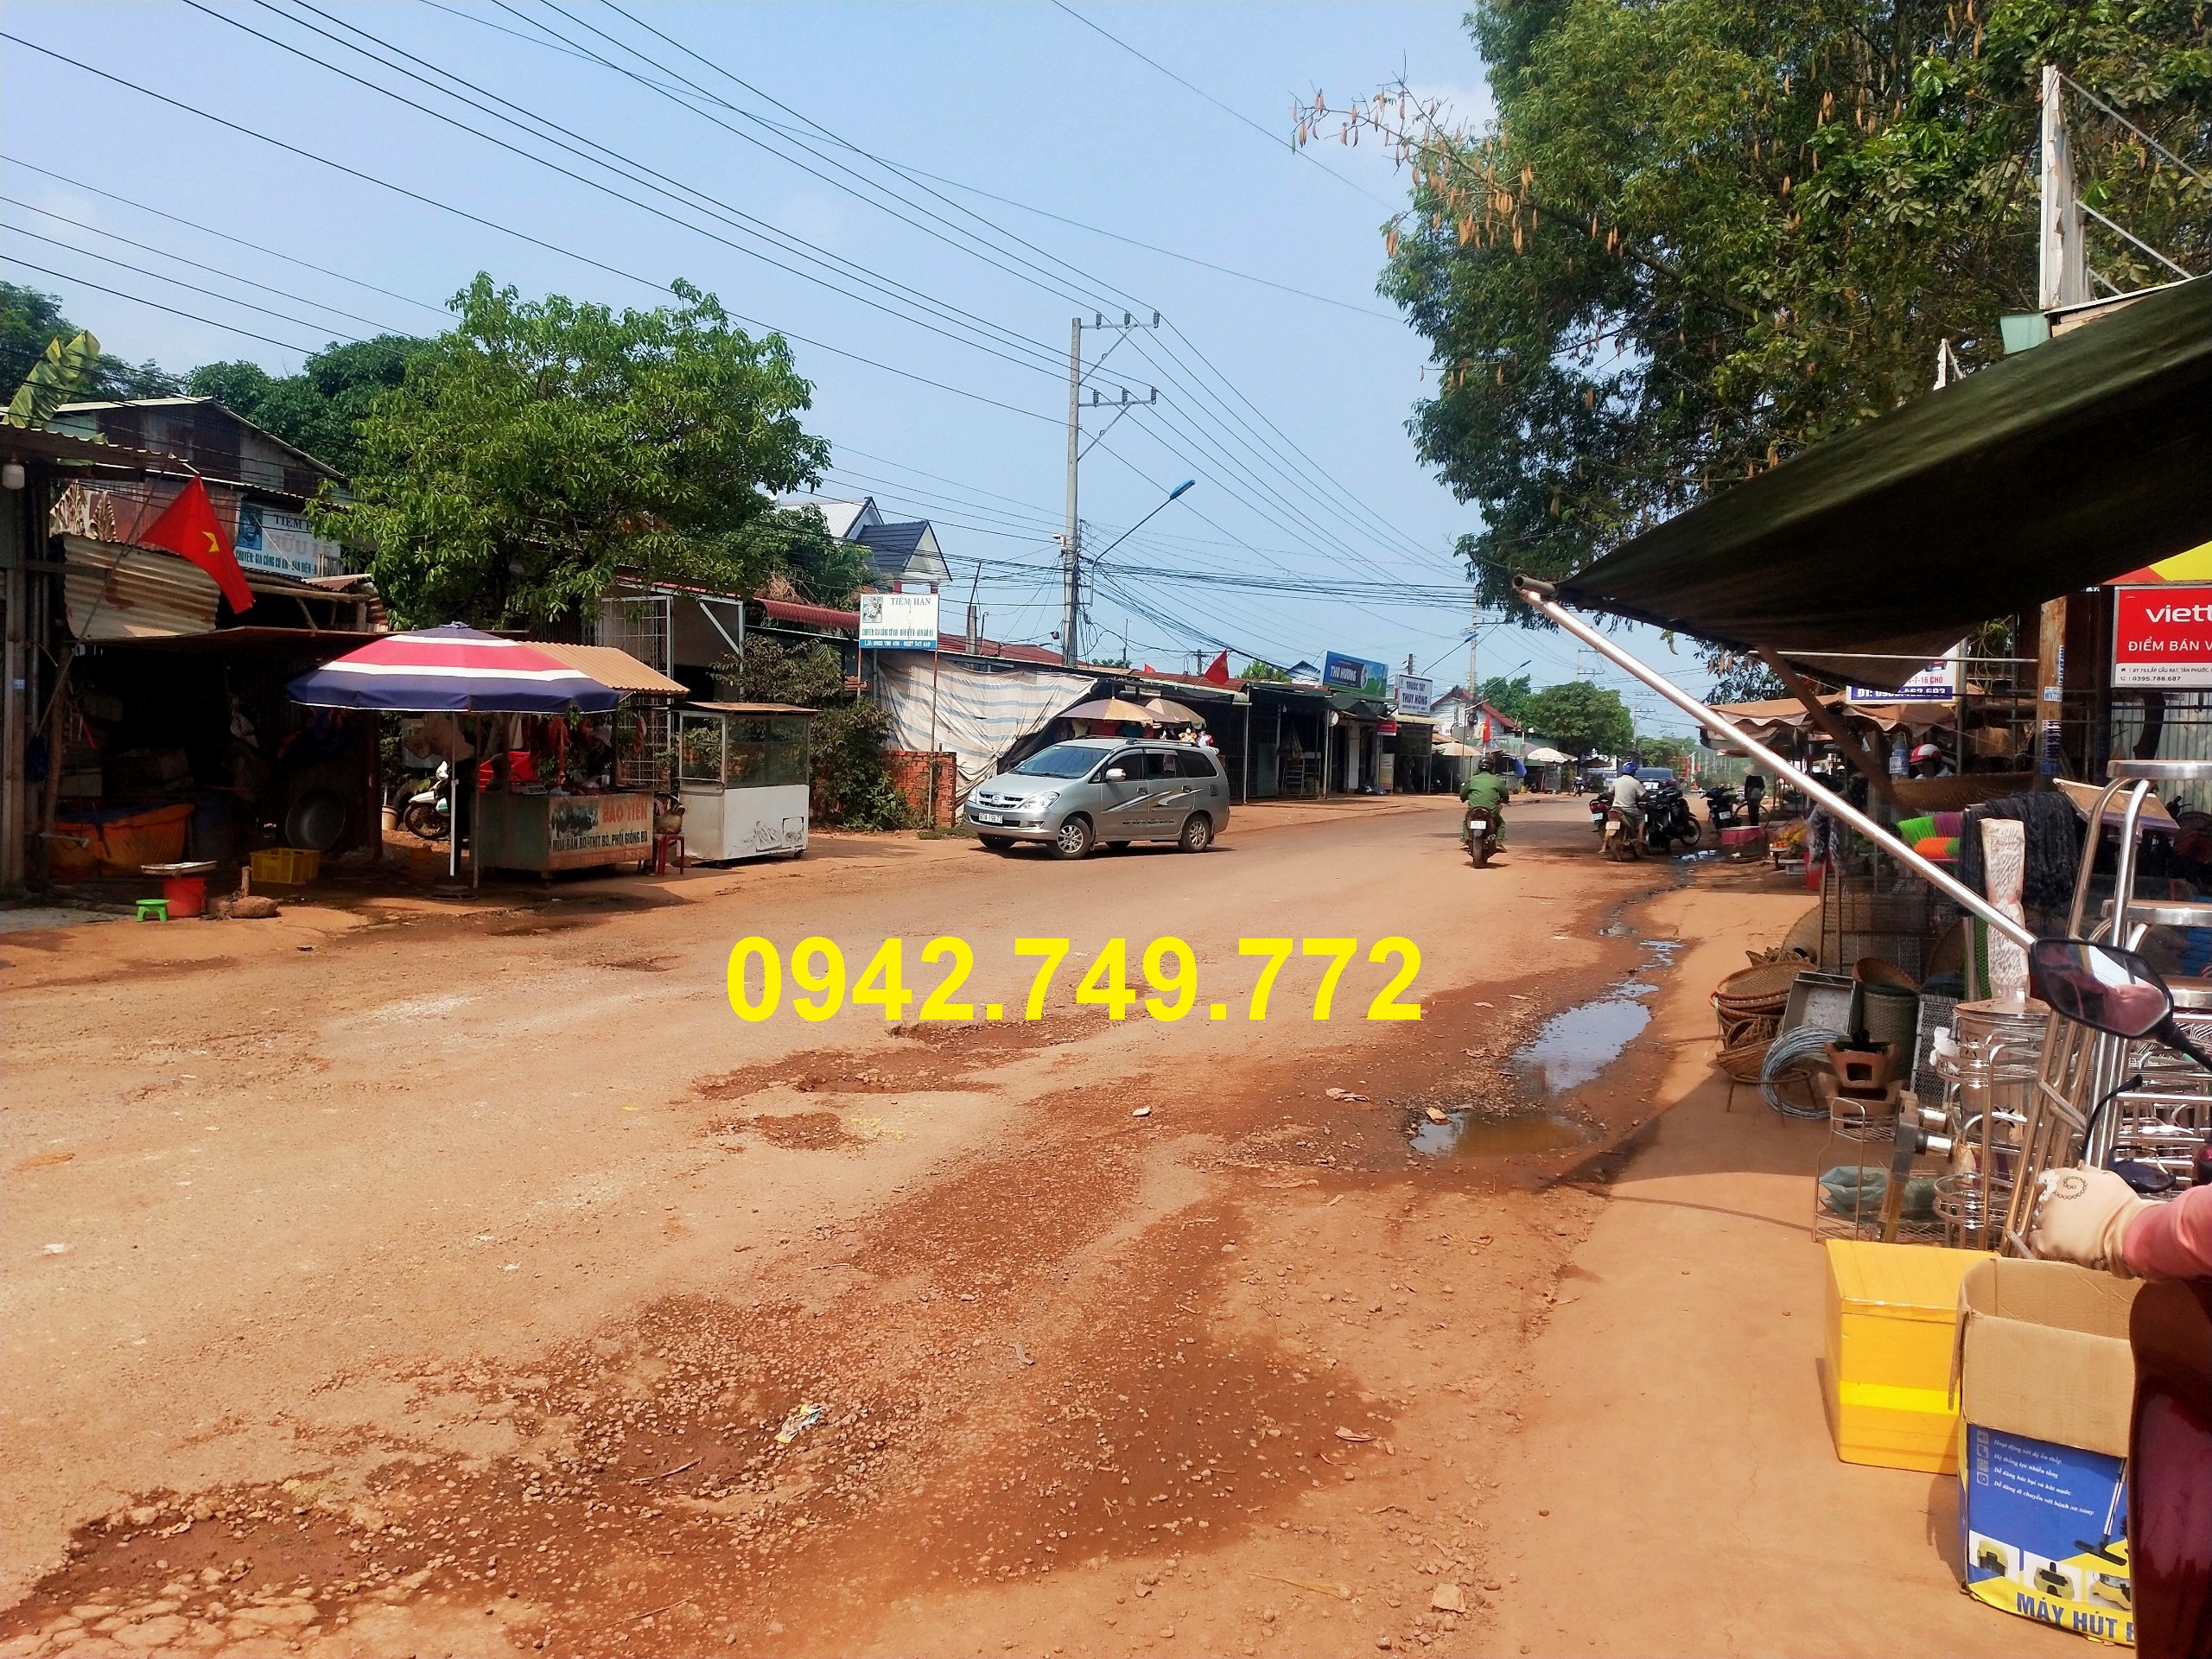 Cần bán Đất đường 753, Xã Tân Phước, Diện tích 205m², Giá 450.000.000 Triệu - LH: 0942749772